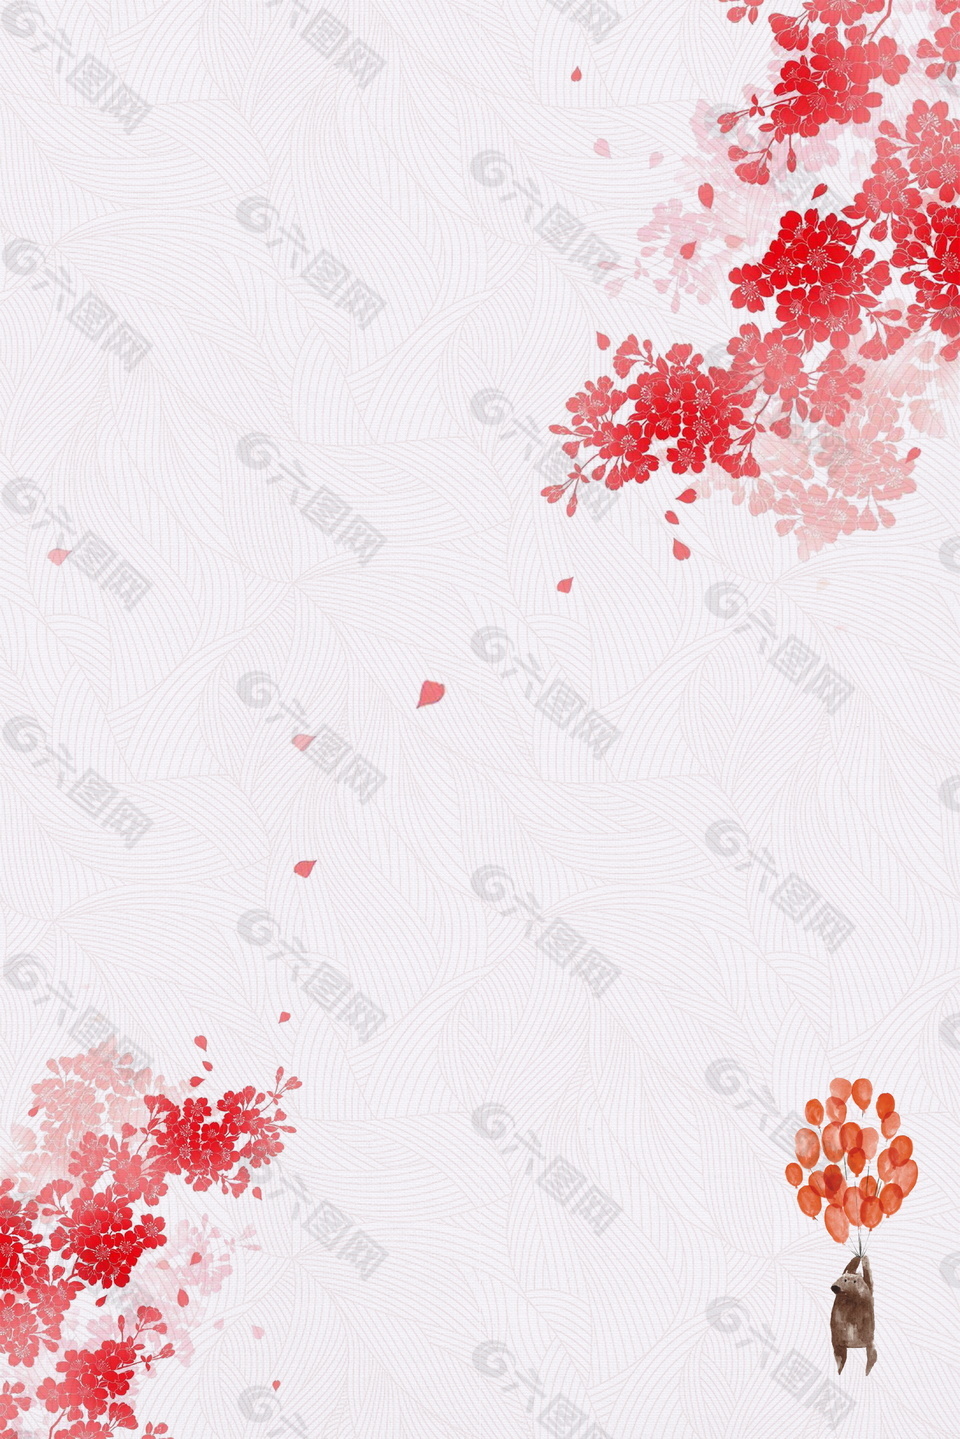 红色鲜艳气球日系文艺范广告背景素材